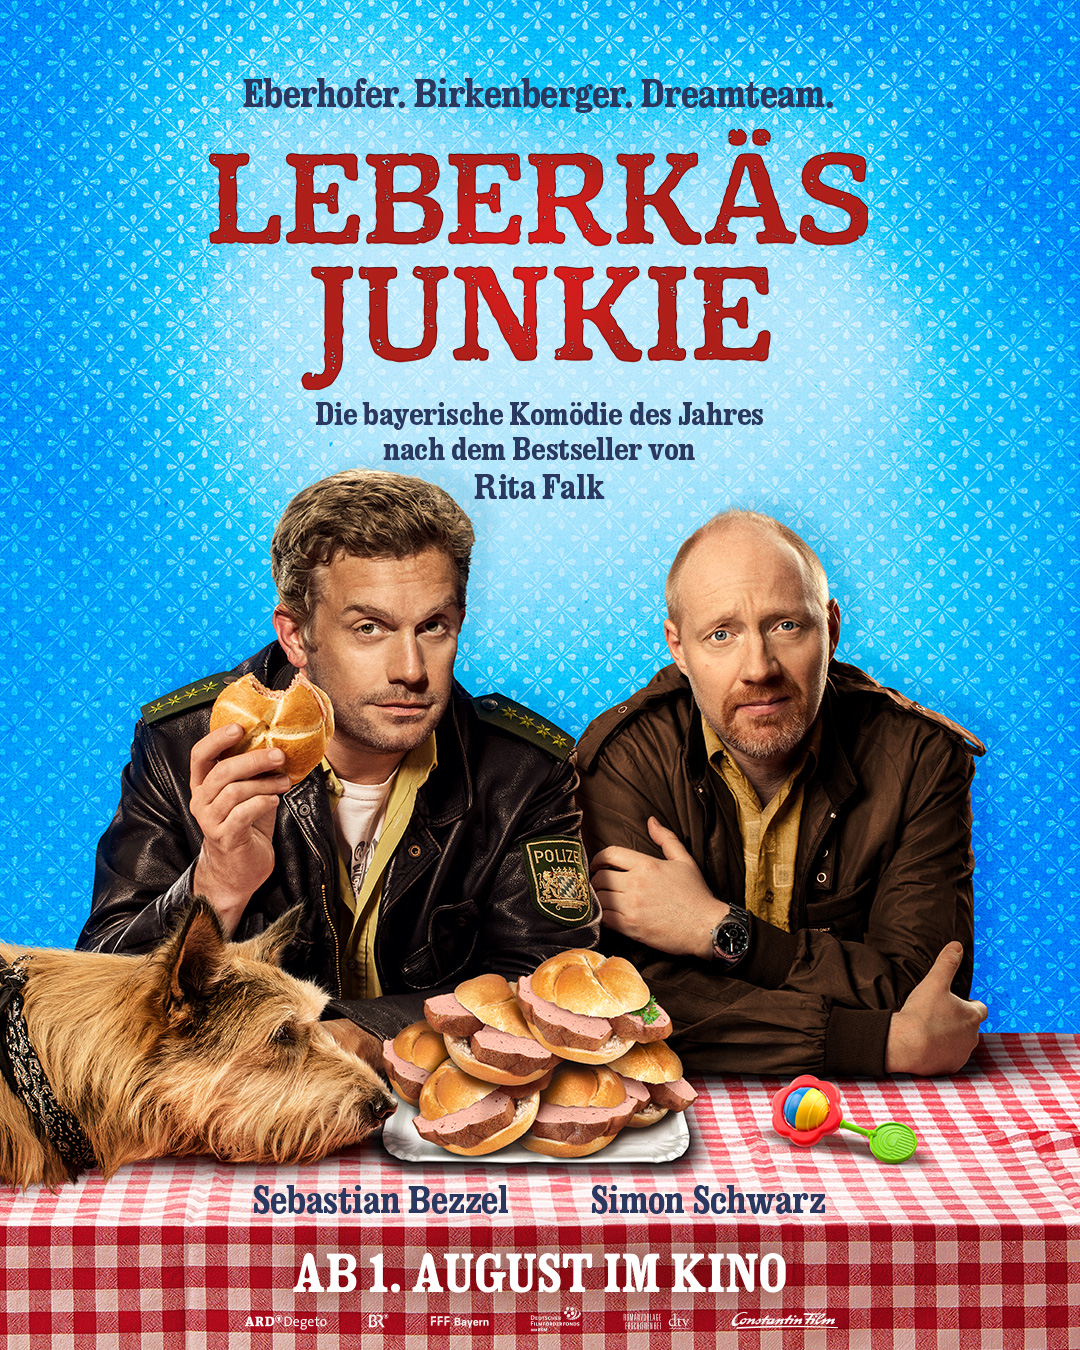 LEBERKÄSJUNKIE  / Ab 1. August 2019 im Kino